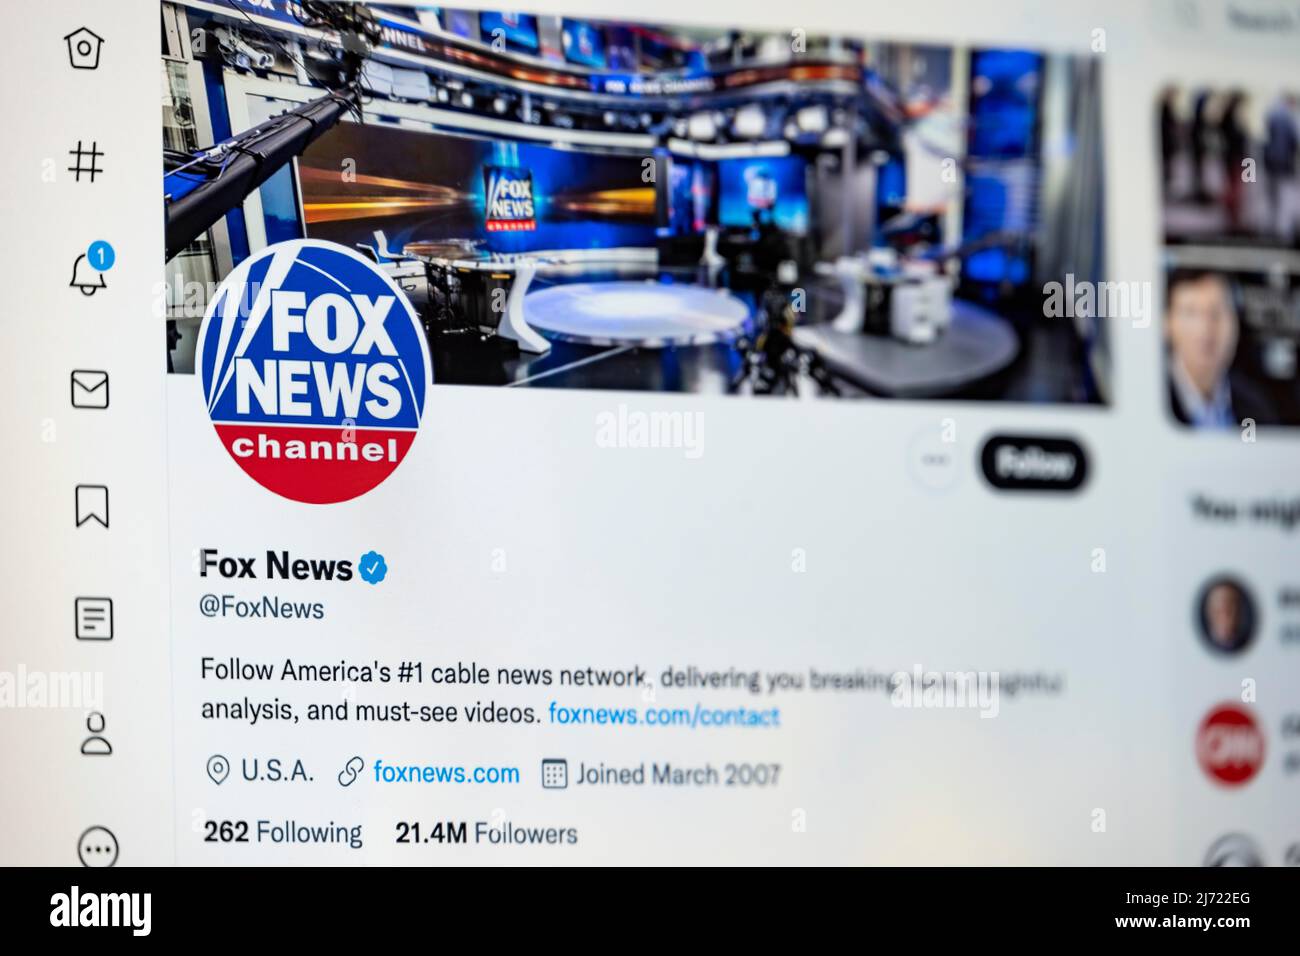 Twitter Seite des Fernsehsender Fox News, Twitter, Soziales Netzwerk, Internet, Bildschirmfoto, Détail, Allemagne Banque D'Images